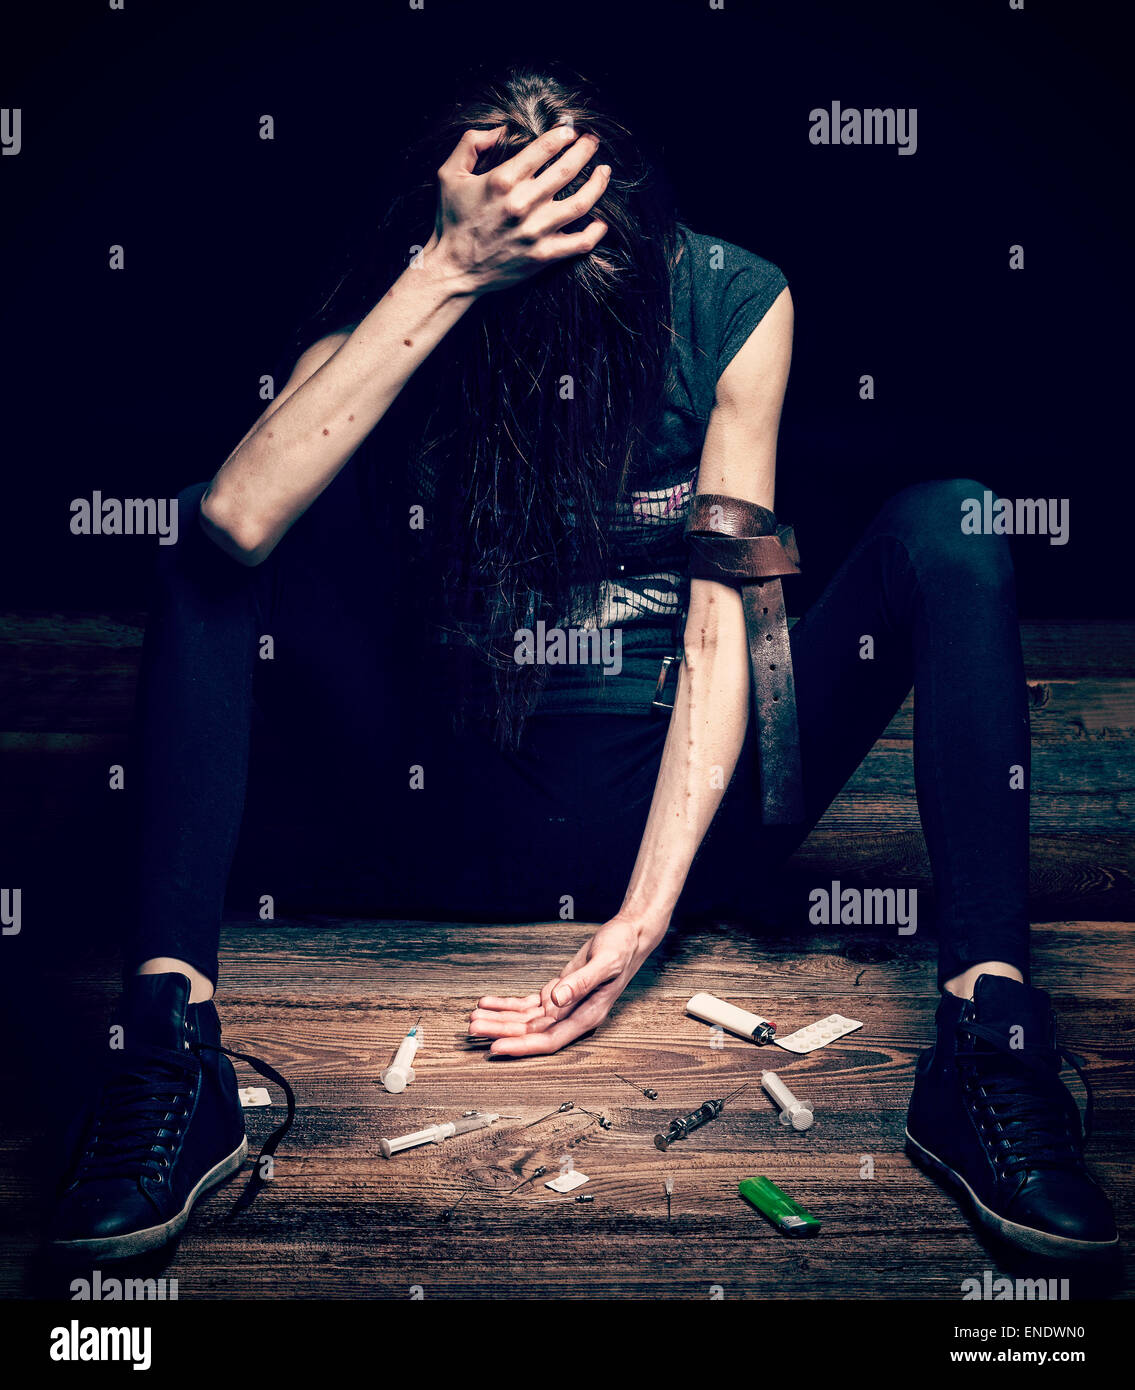 Grunge vintage croix photo filtrée d'une femme se présentant comme toxicomane, concept photo. Banque D'Images